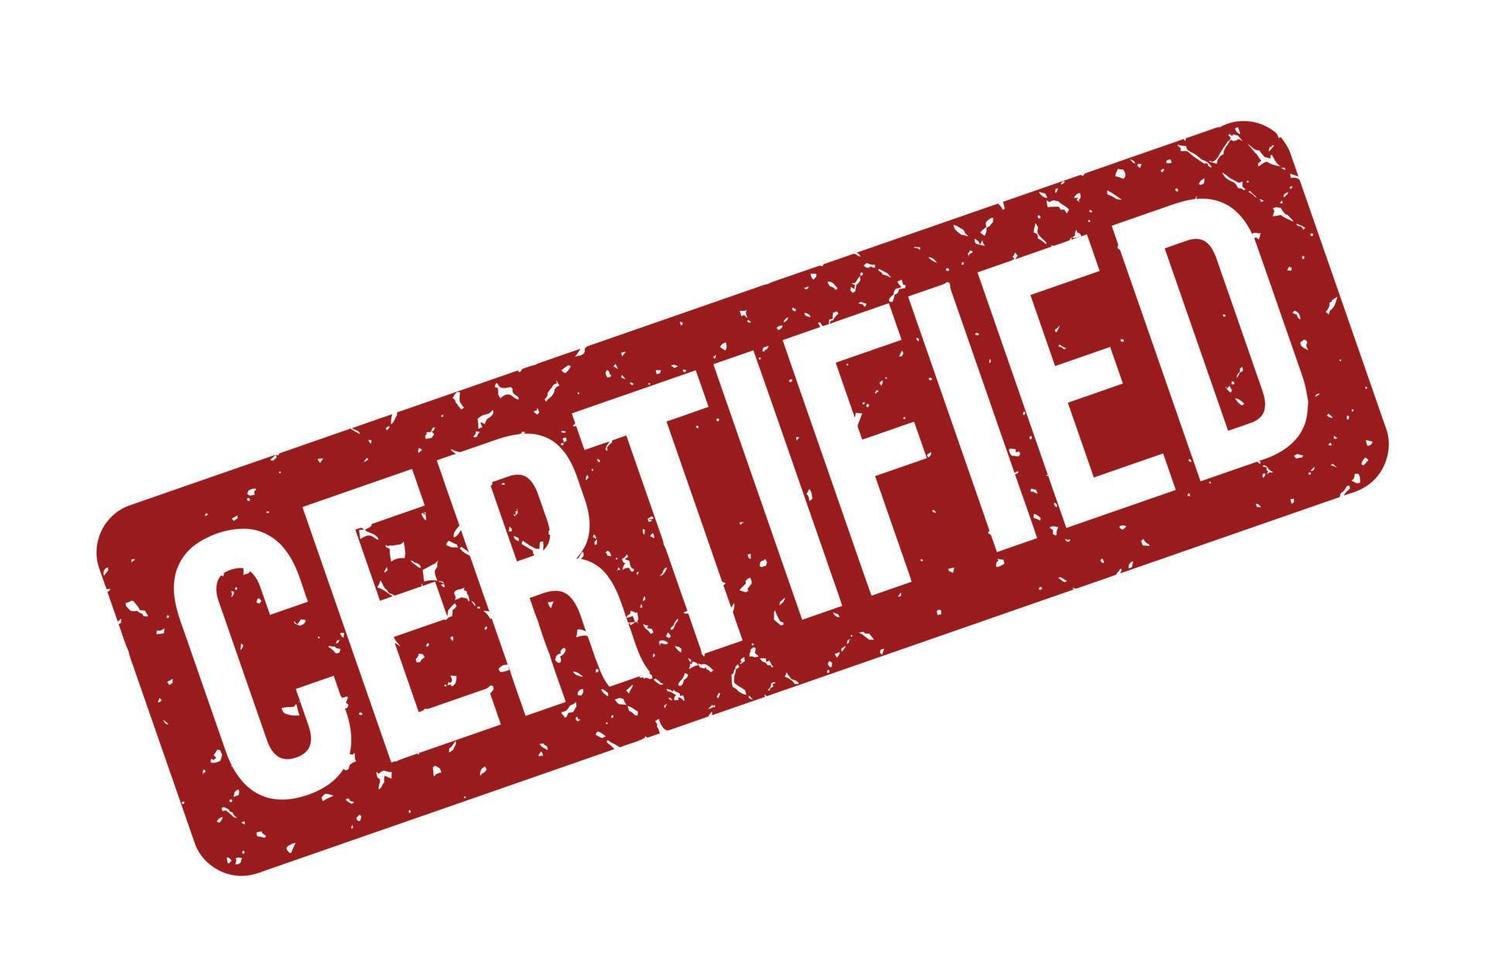 carimbo de borracha certificado. ilustração vetorial de selo de carimbo grunge de borracha certificada vermelha - vector